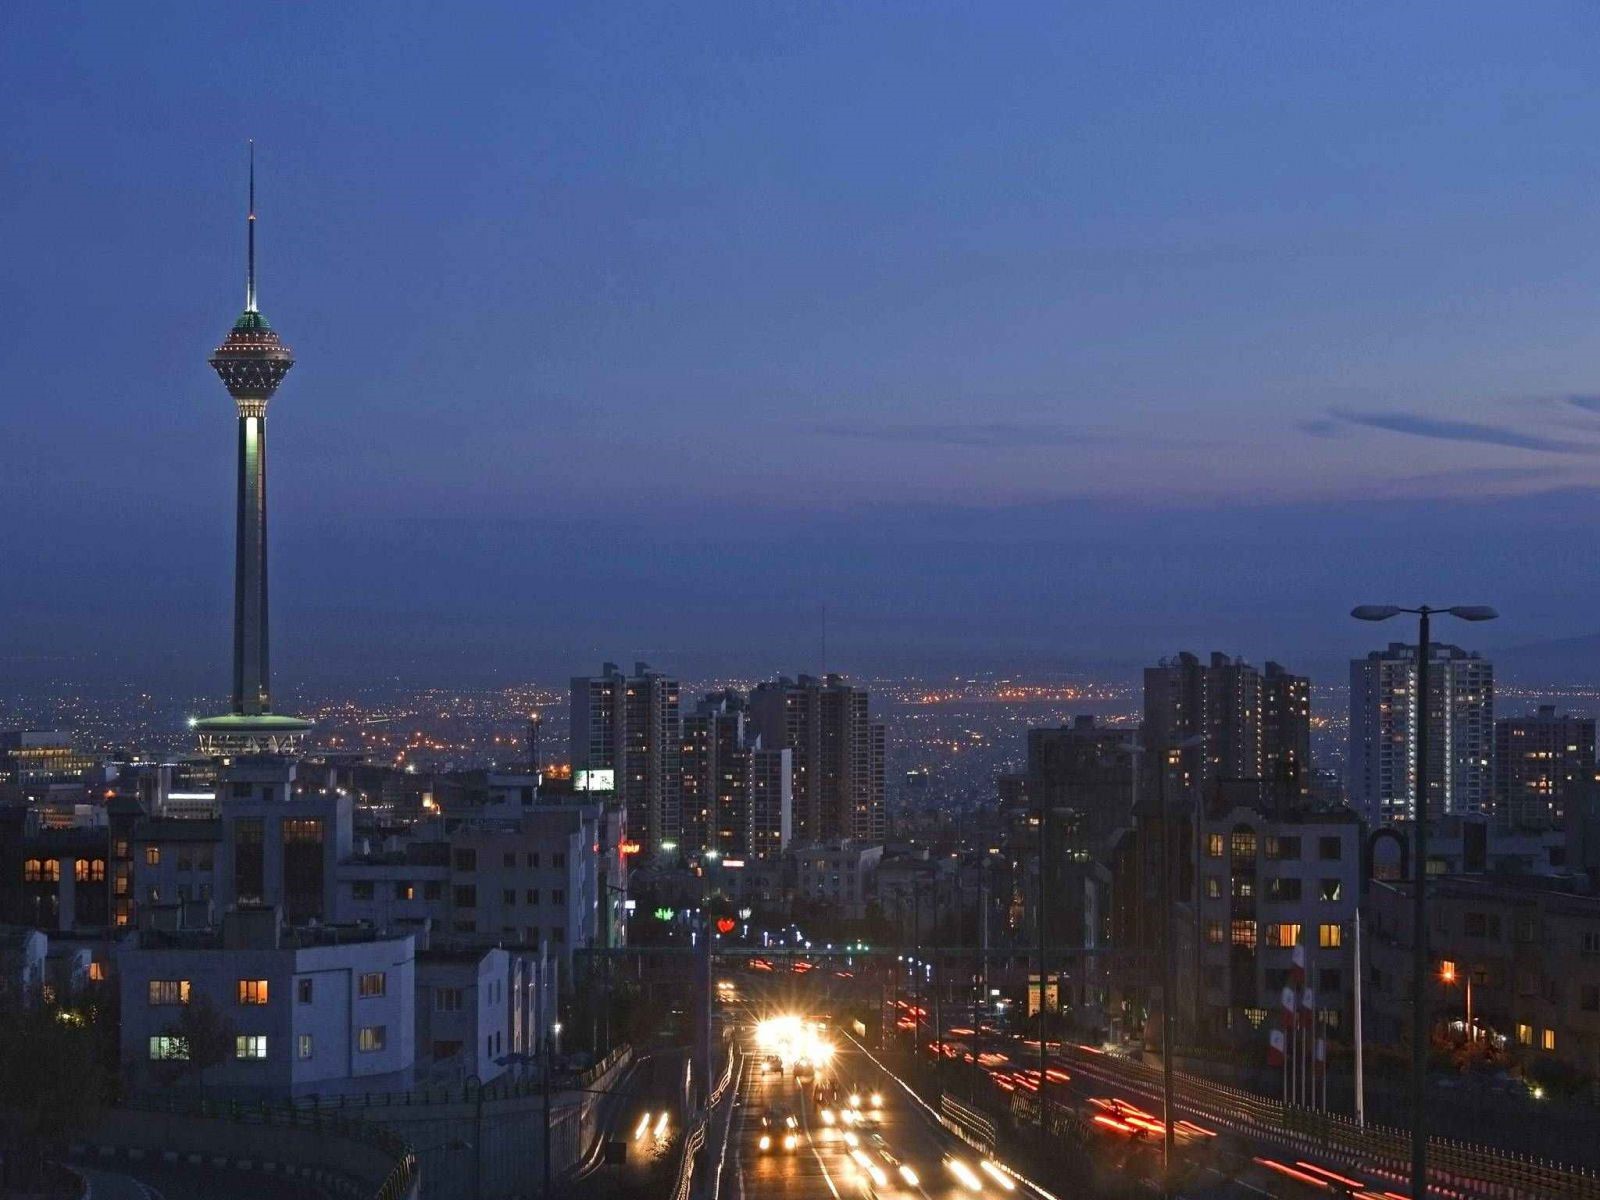 بهترین زمان سفر به تهران با ماشین + بهترین مسیر